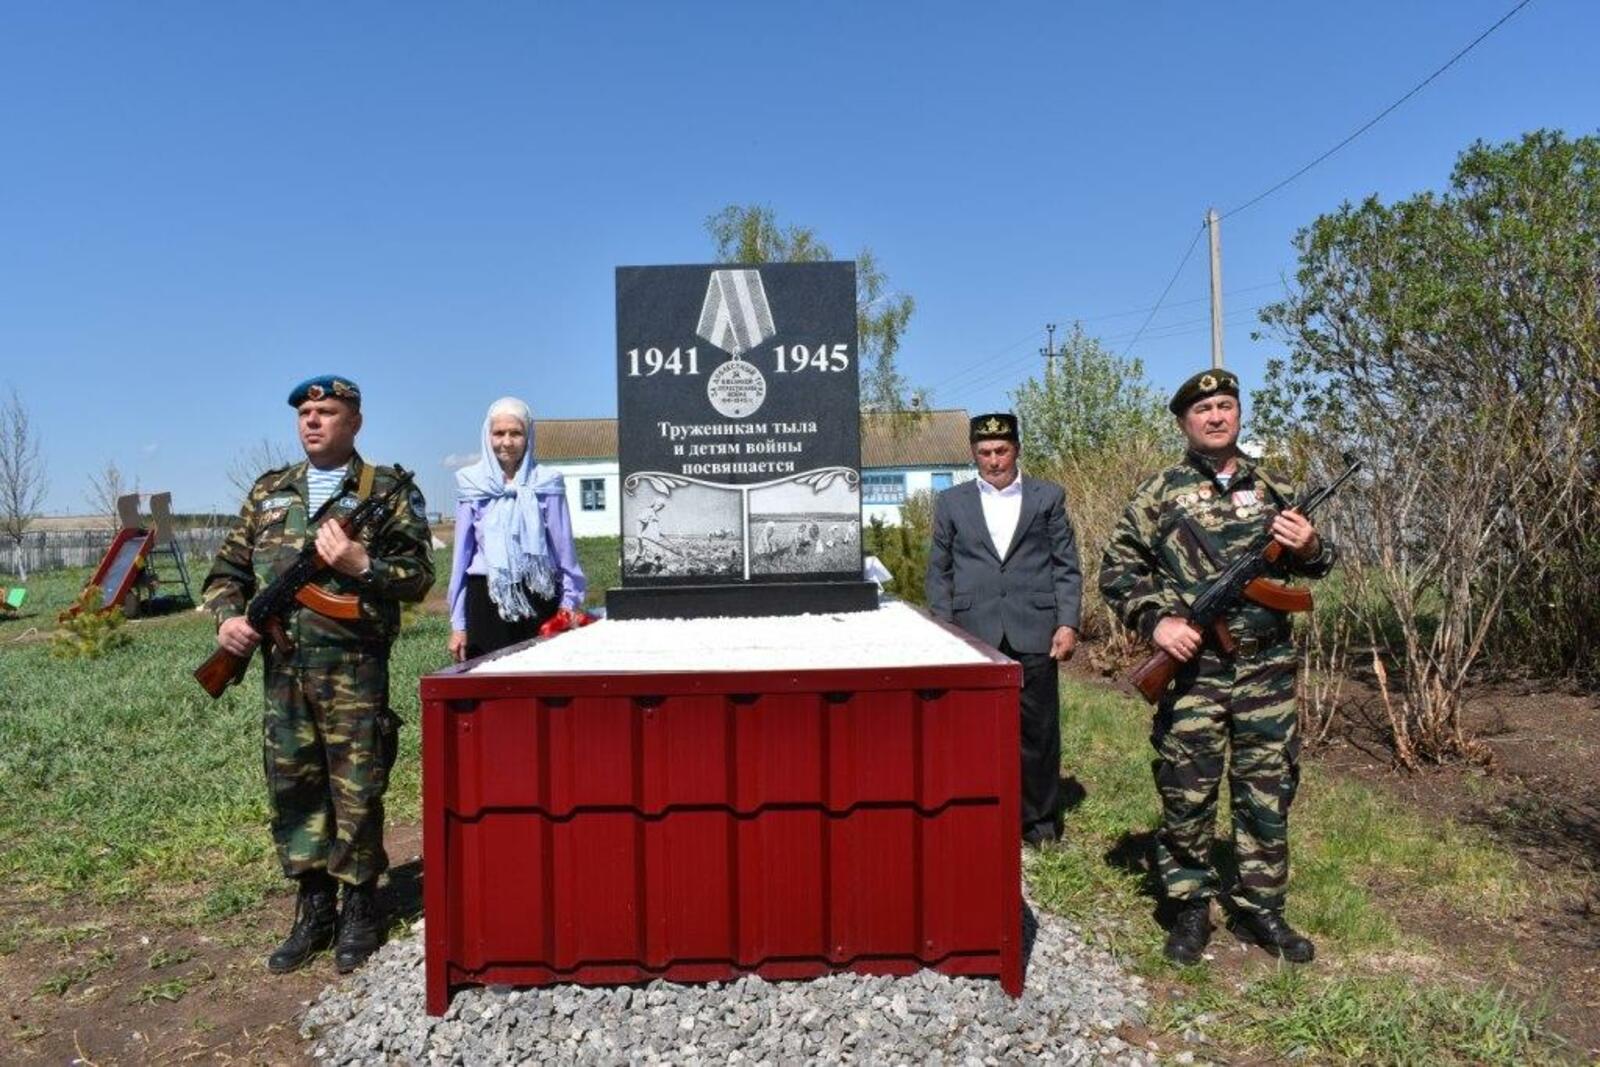 Памятник землякам - труженикам тыла и детям войны  в селе Аюханово открыт.